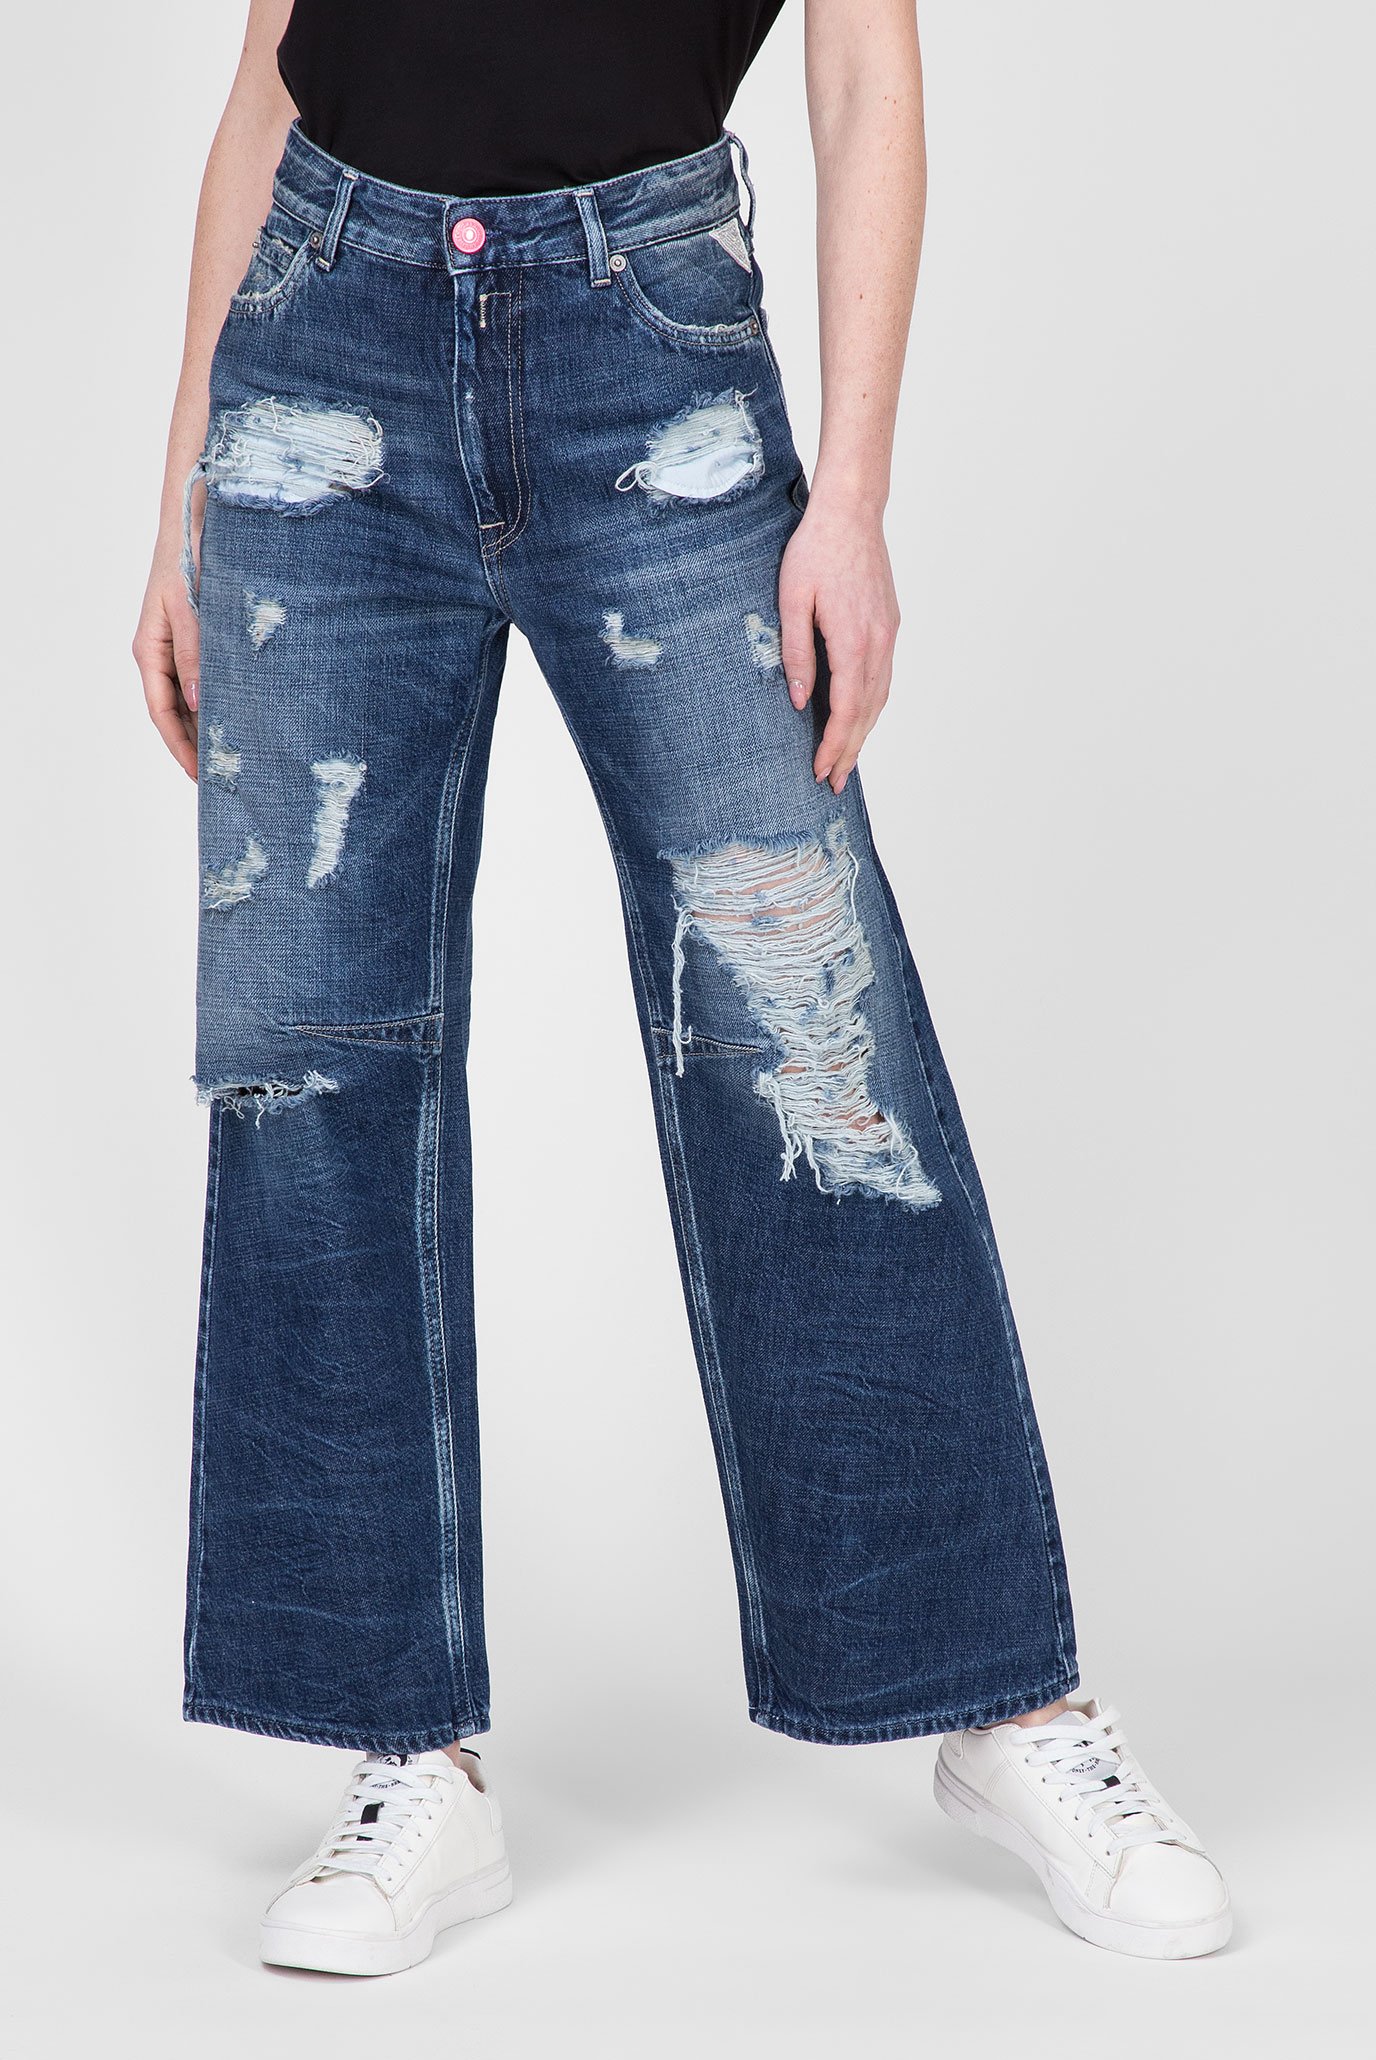 Жіночі сині джинси KIARA 1